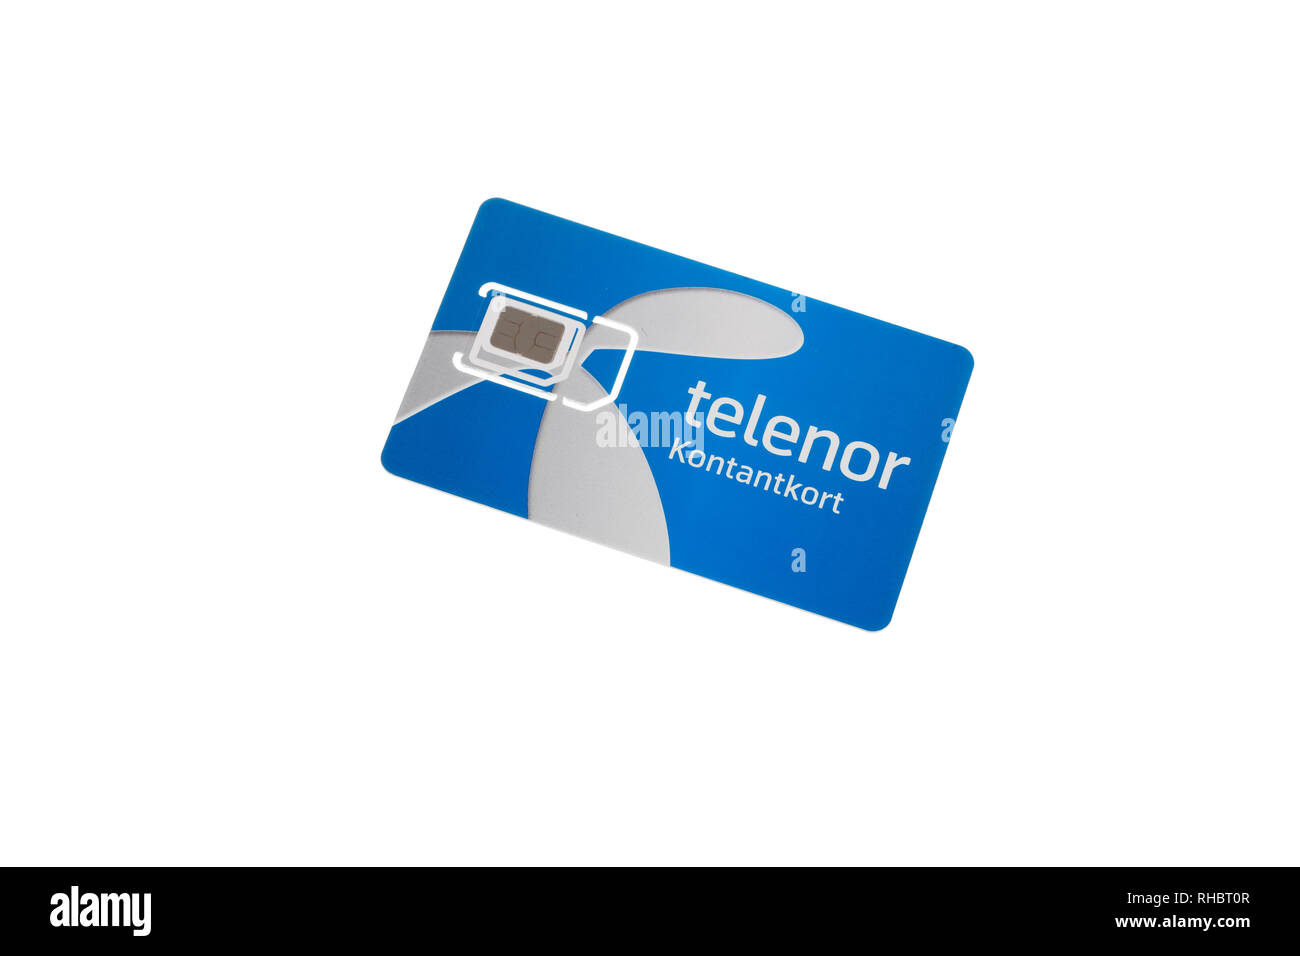 Stockholm, Schweden, 1. Februar 2019: Eine Telenor Handy Prepaid Karte für den schwedischen Markt, wie sieht es aus wie im Feb. 2019 Stockfoto